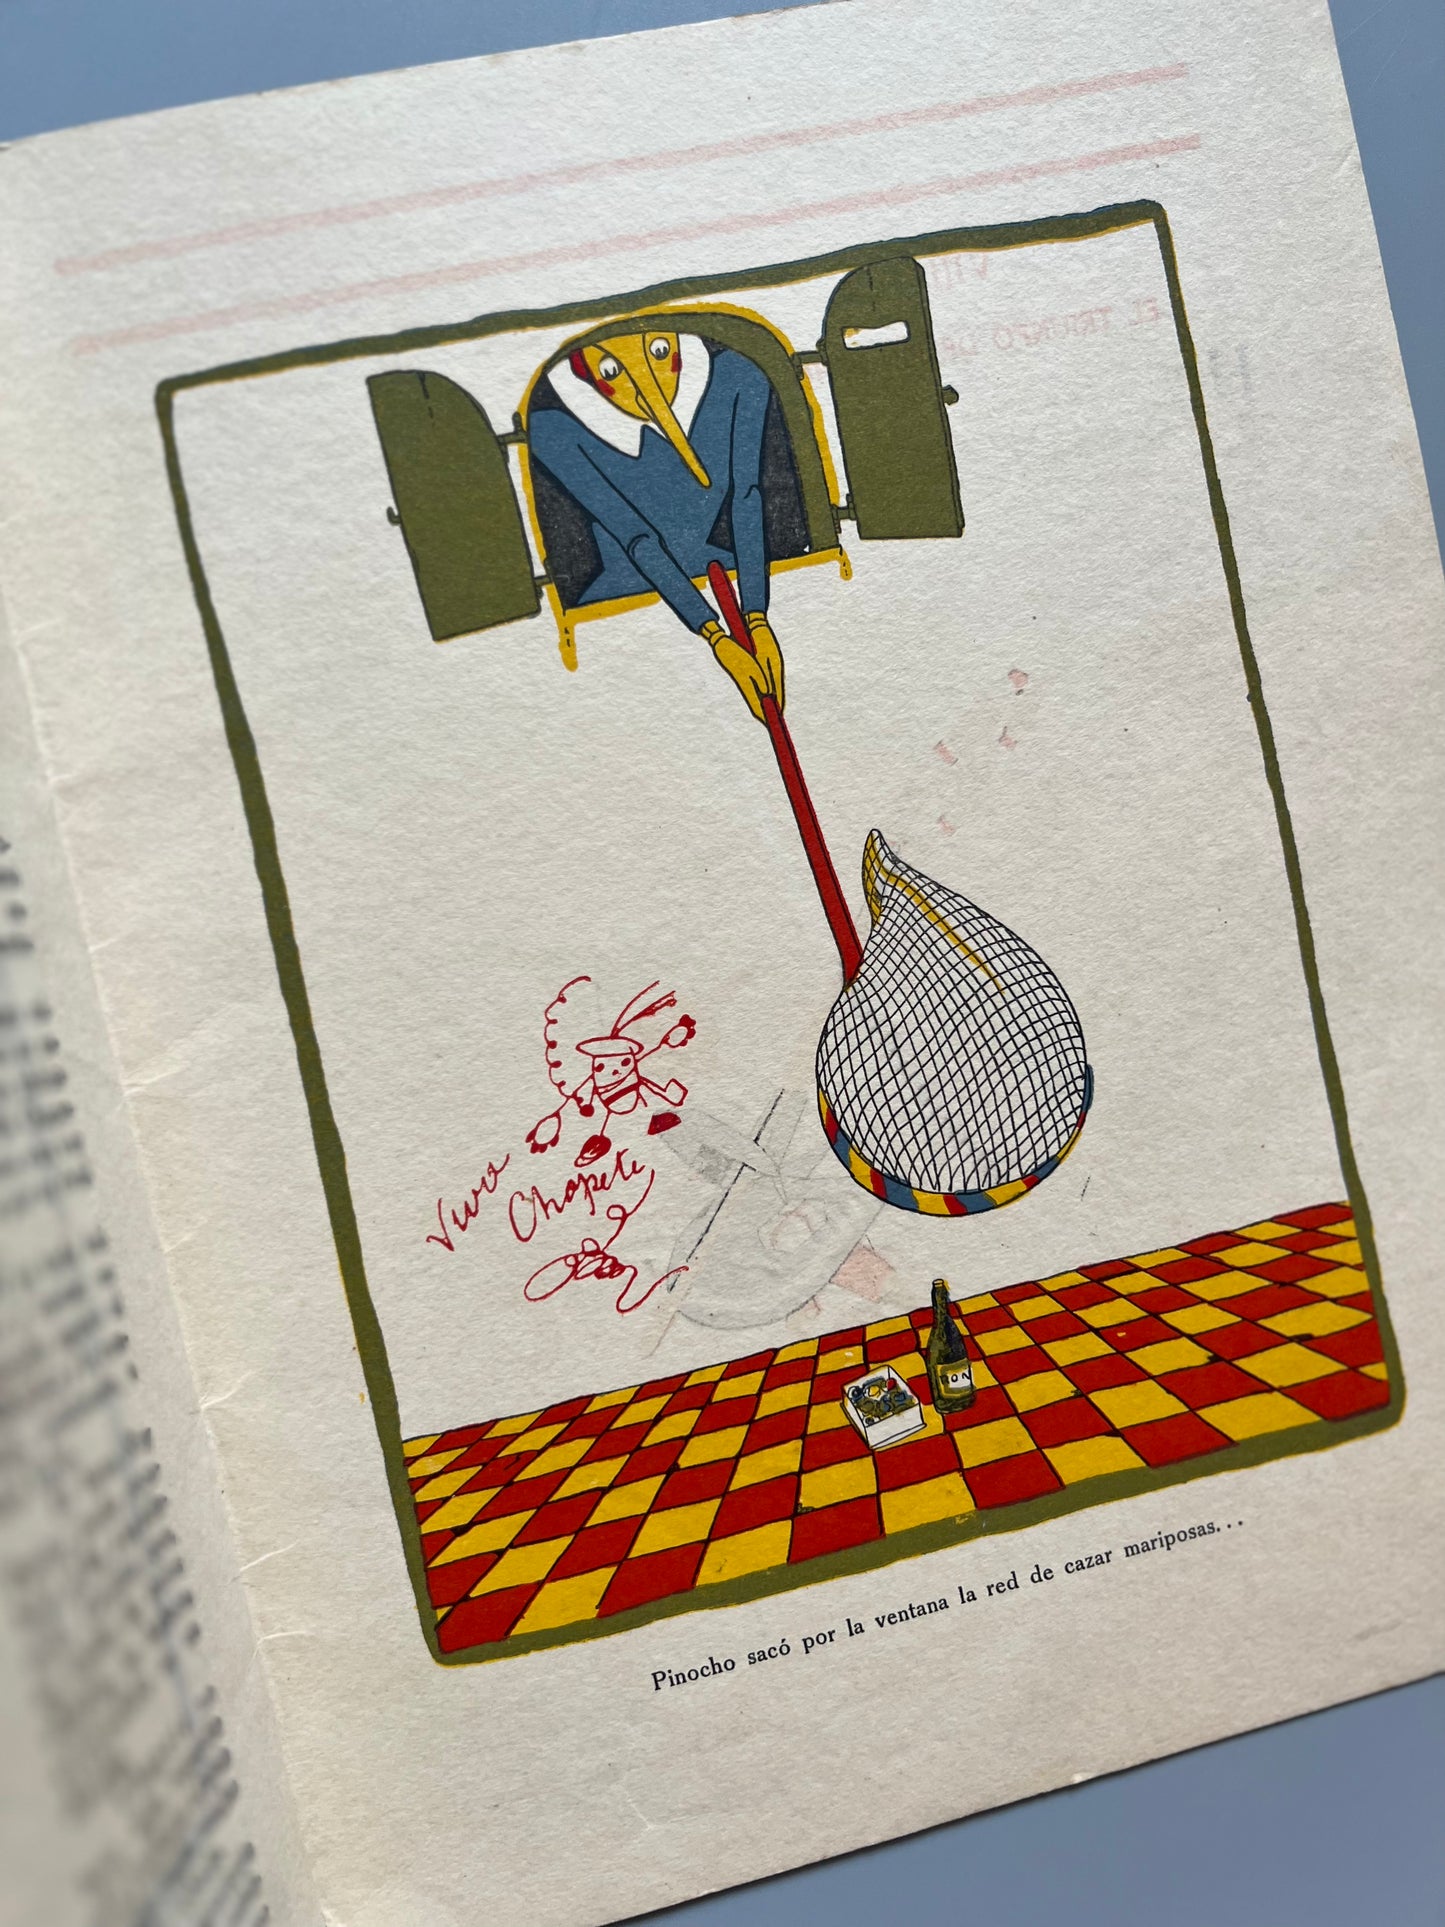 Chapete invisible, Cuentos de Calleja en colores - Editorial Saturnino Calleja, 1923